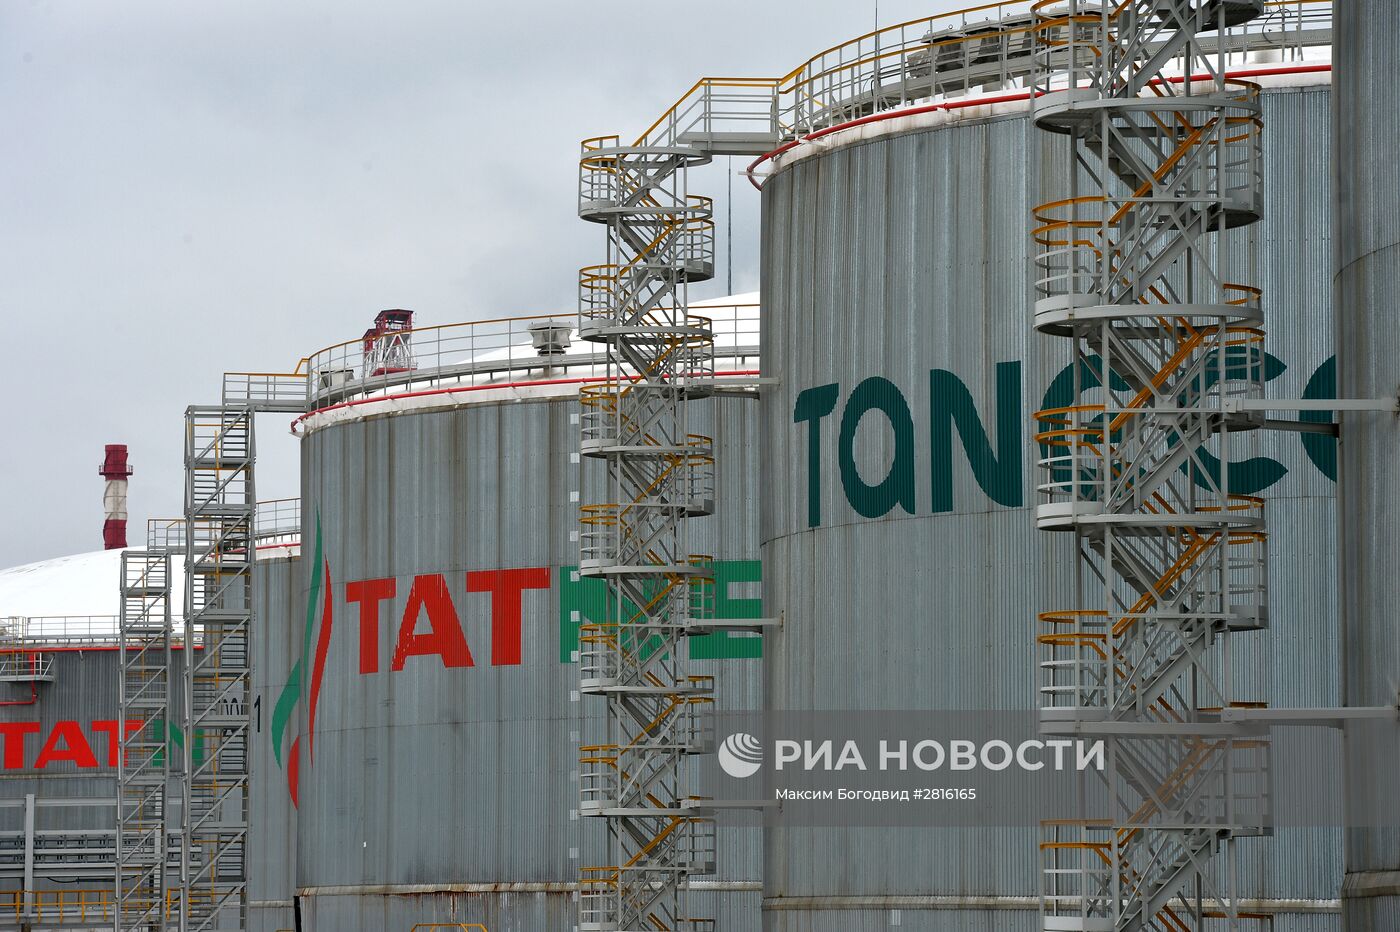 Объекты производственного объединения "Татнефть" в Республике Татарстан